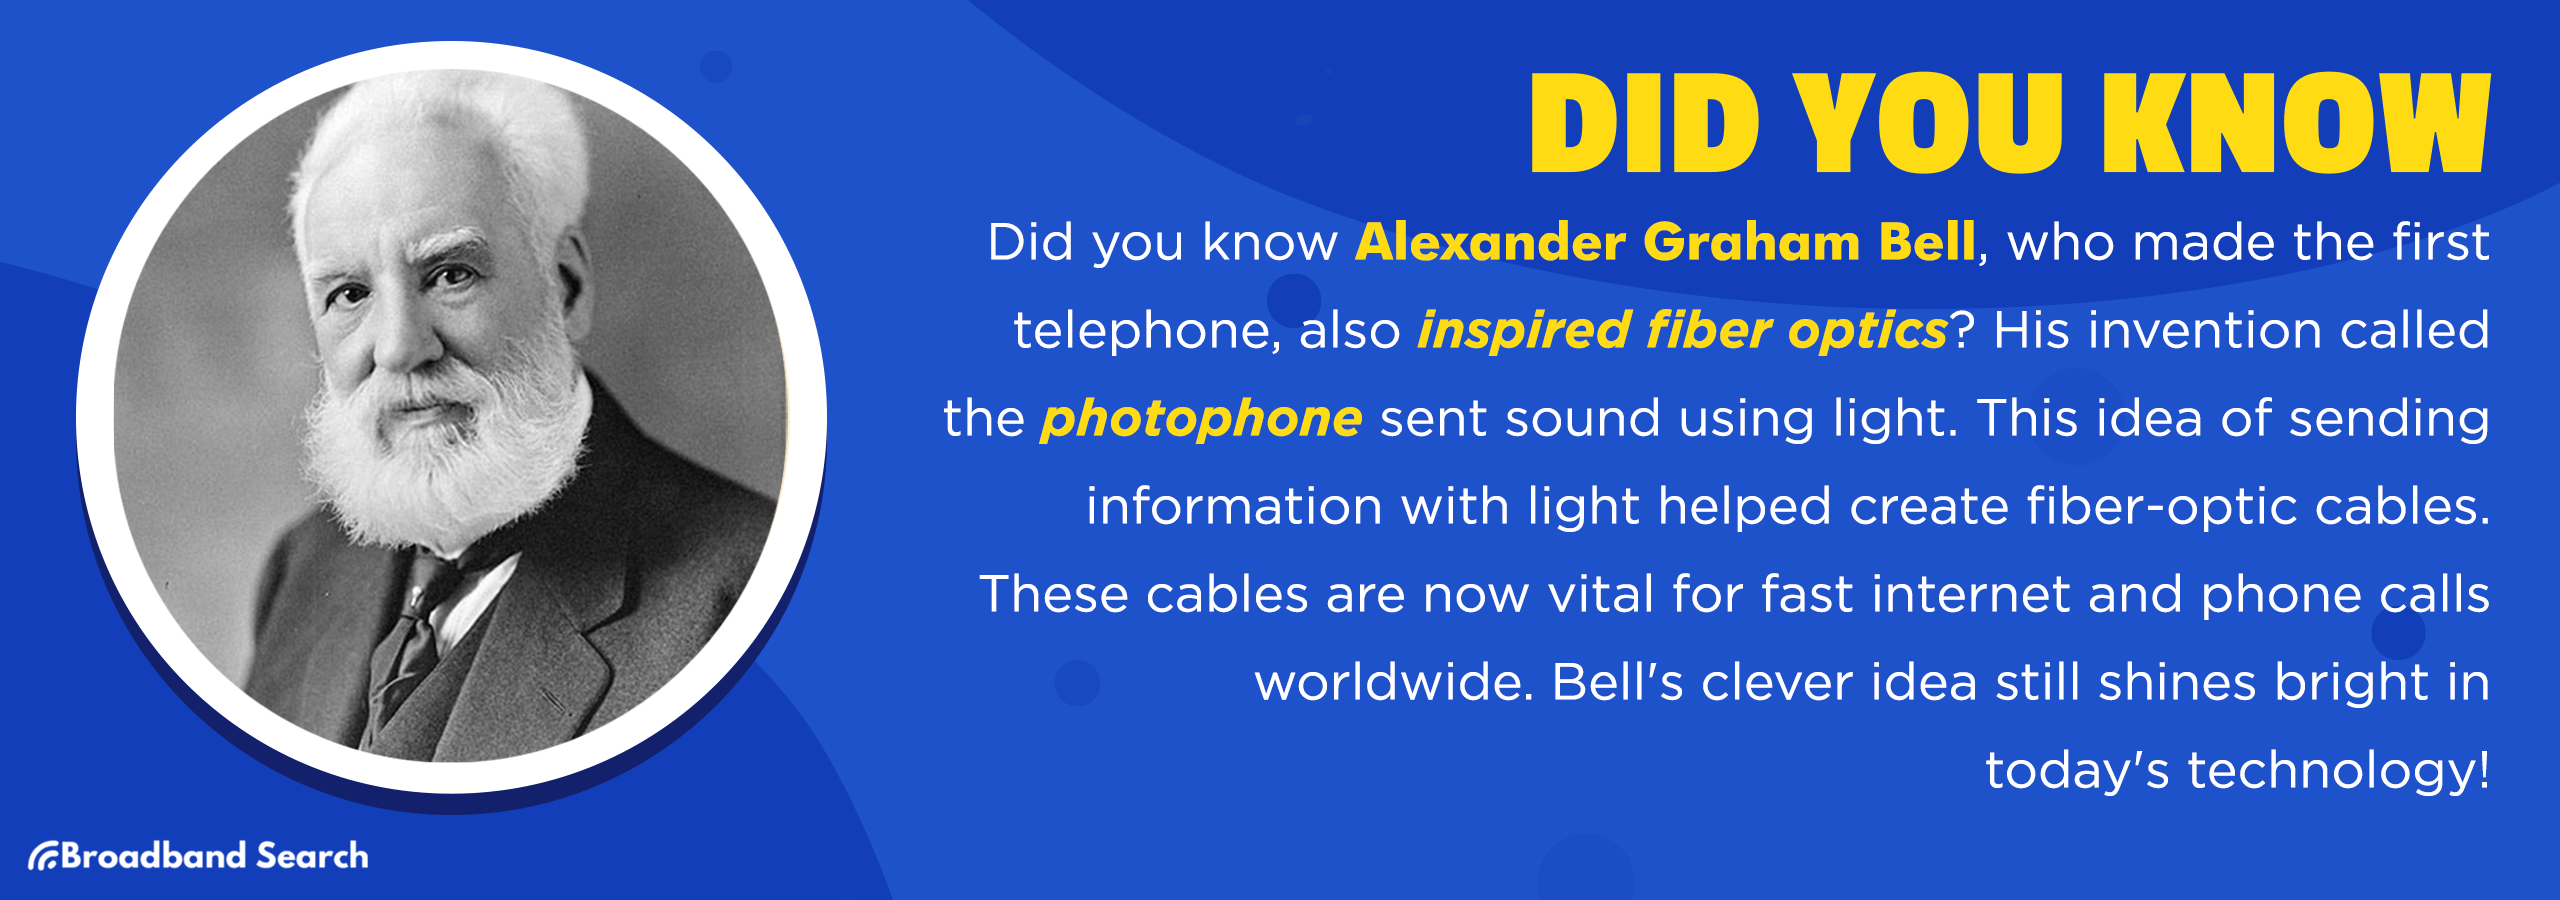 Trivia about alexander graham bell regarding fiber optics